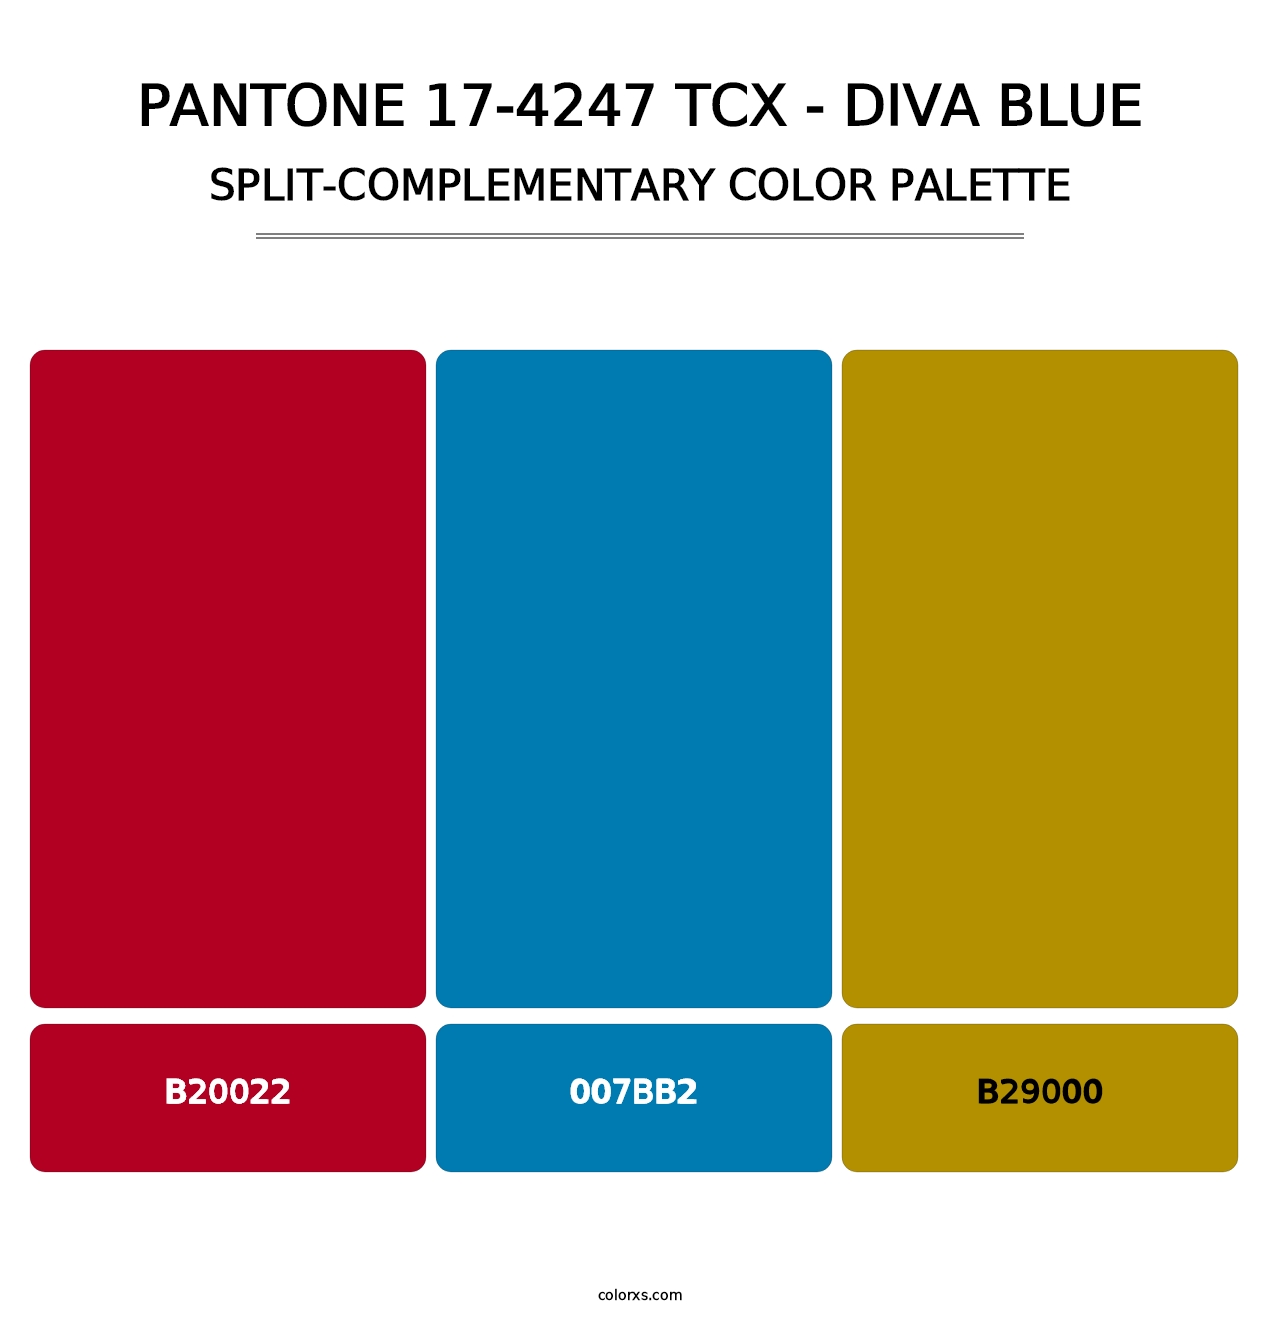 PANTONE 17-4247 TCX - Diva Blue - Split-Complementary Color Palette